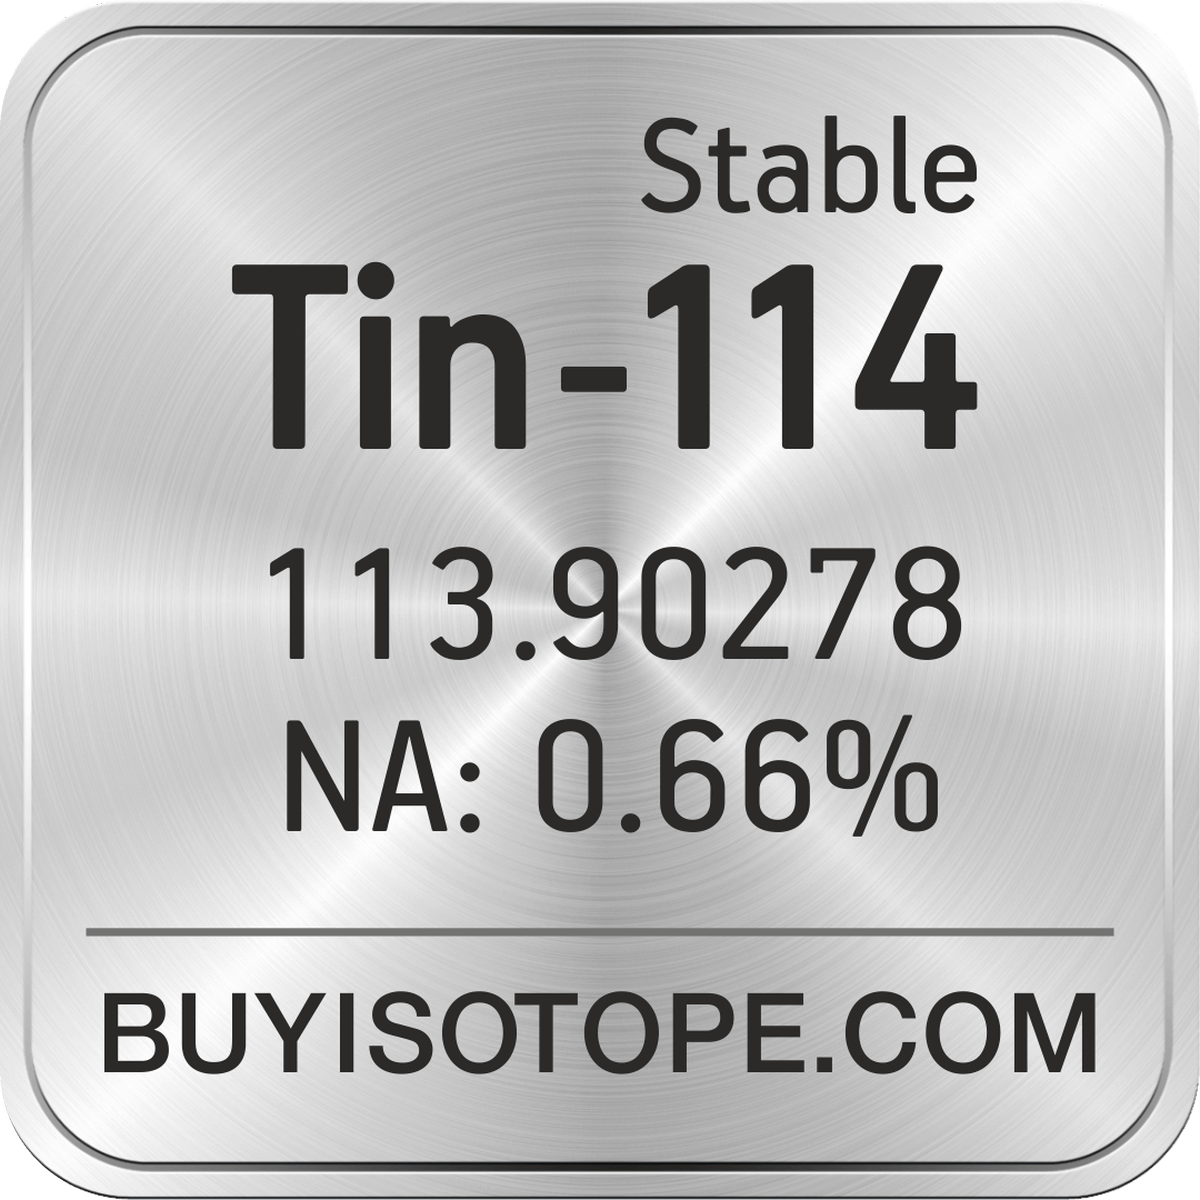 Tin-114, Tin-114 Isotope, Enriched Tin-114, Tin-114 Metal